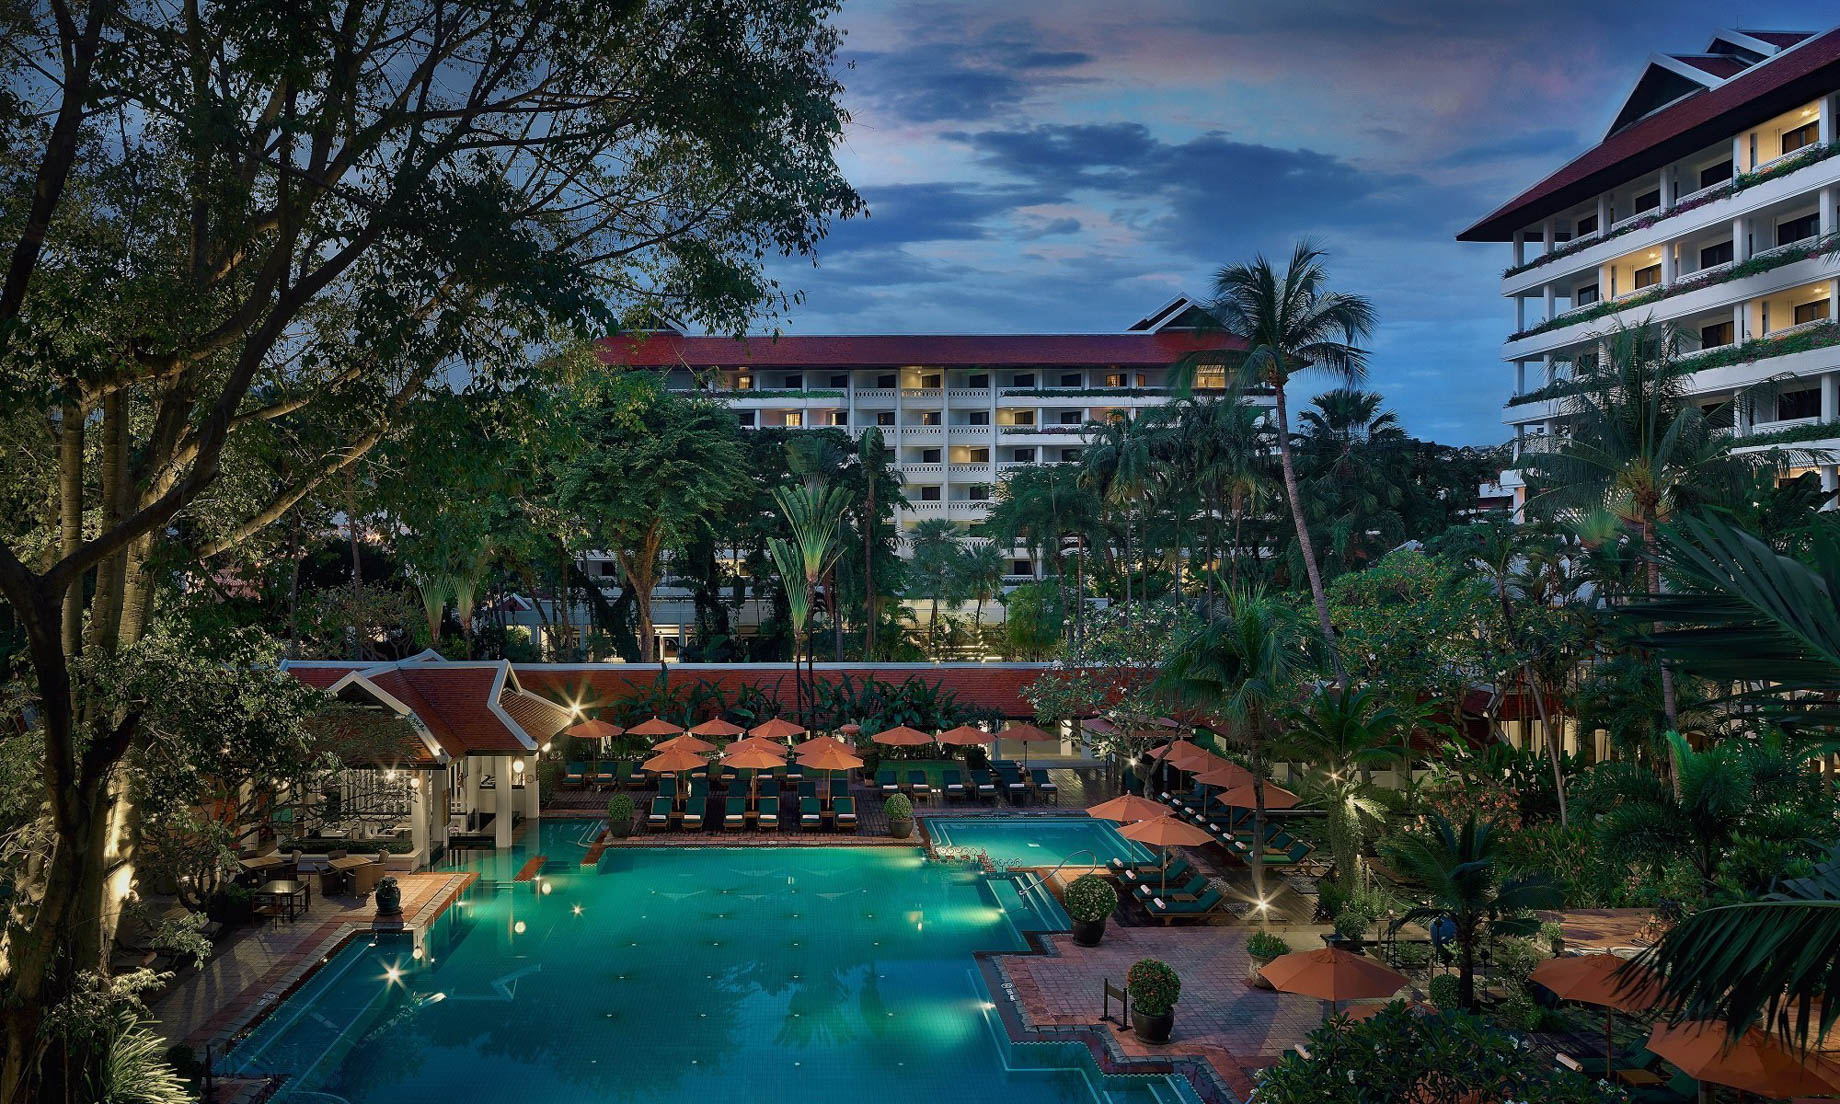 Anantara Riverside Bangkok Resort – Thailand – Pool Night View